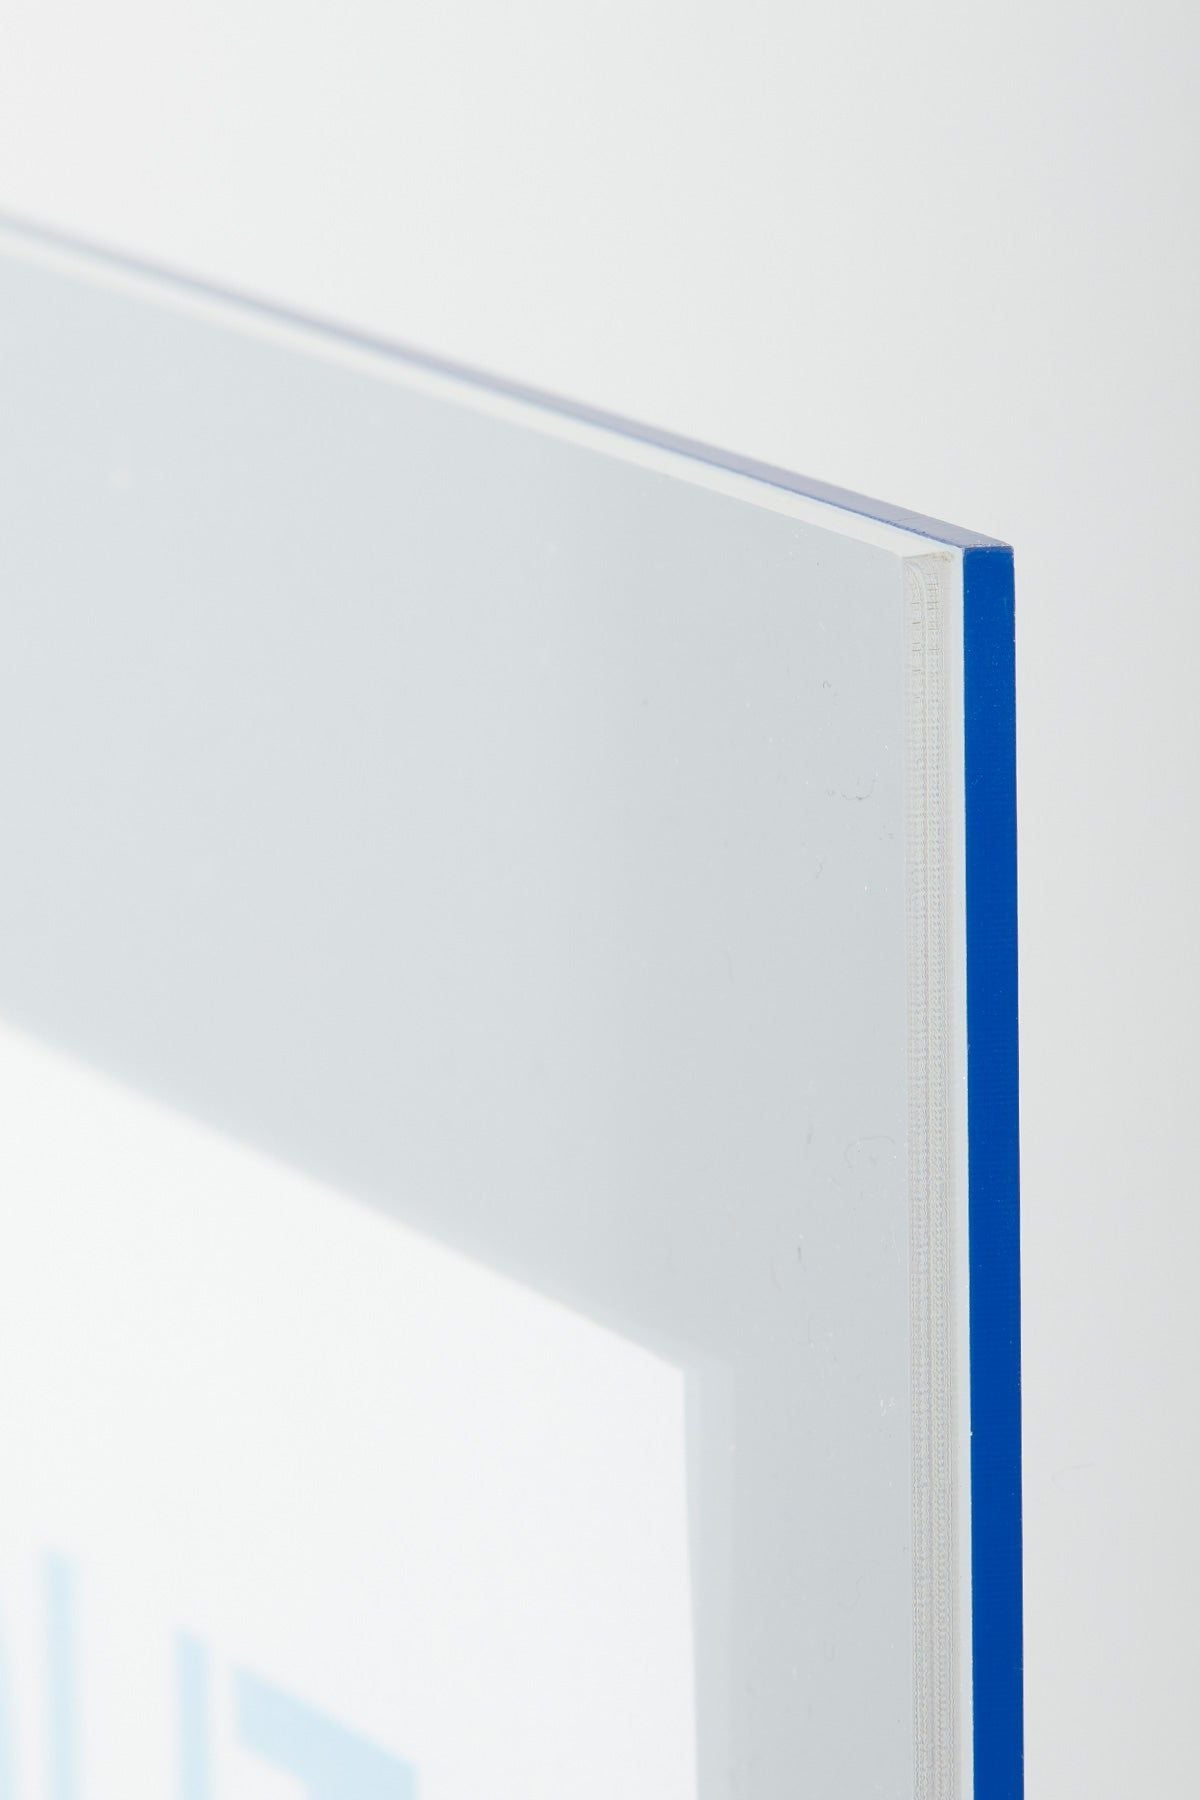 Studio sur le cadre sans cadre A2 rectangle, bleu